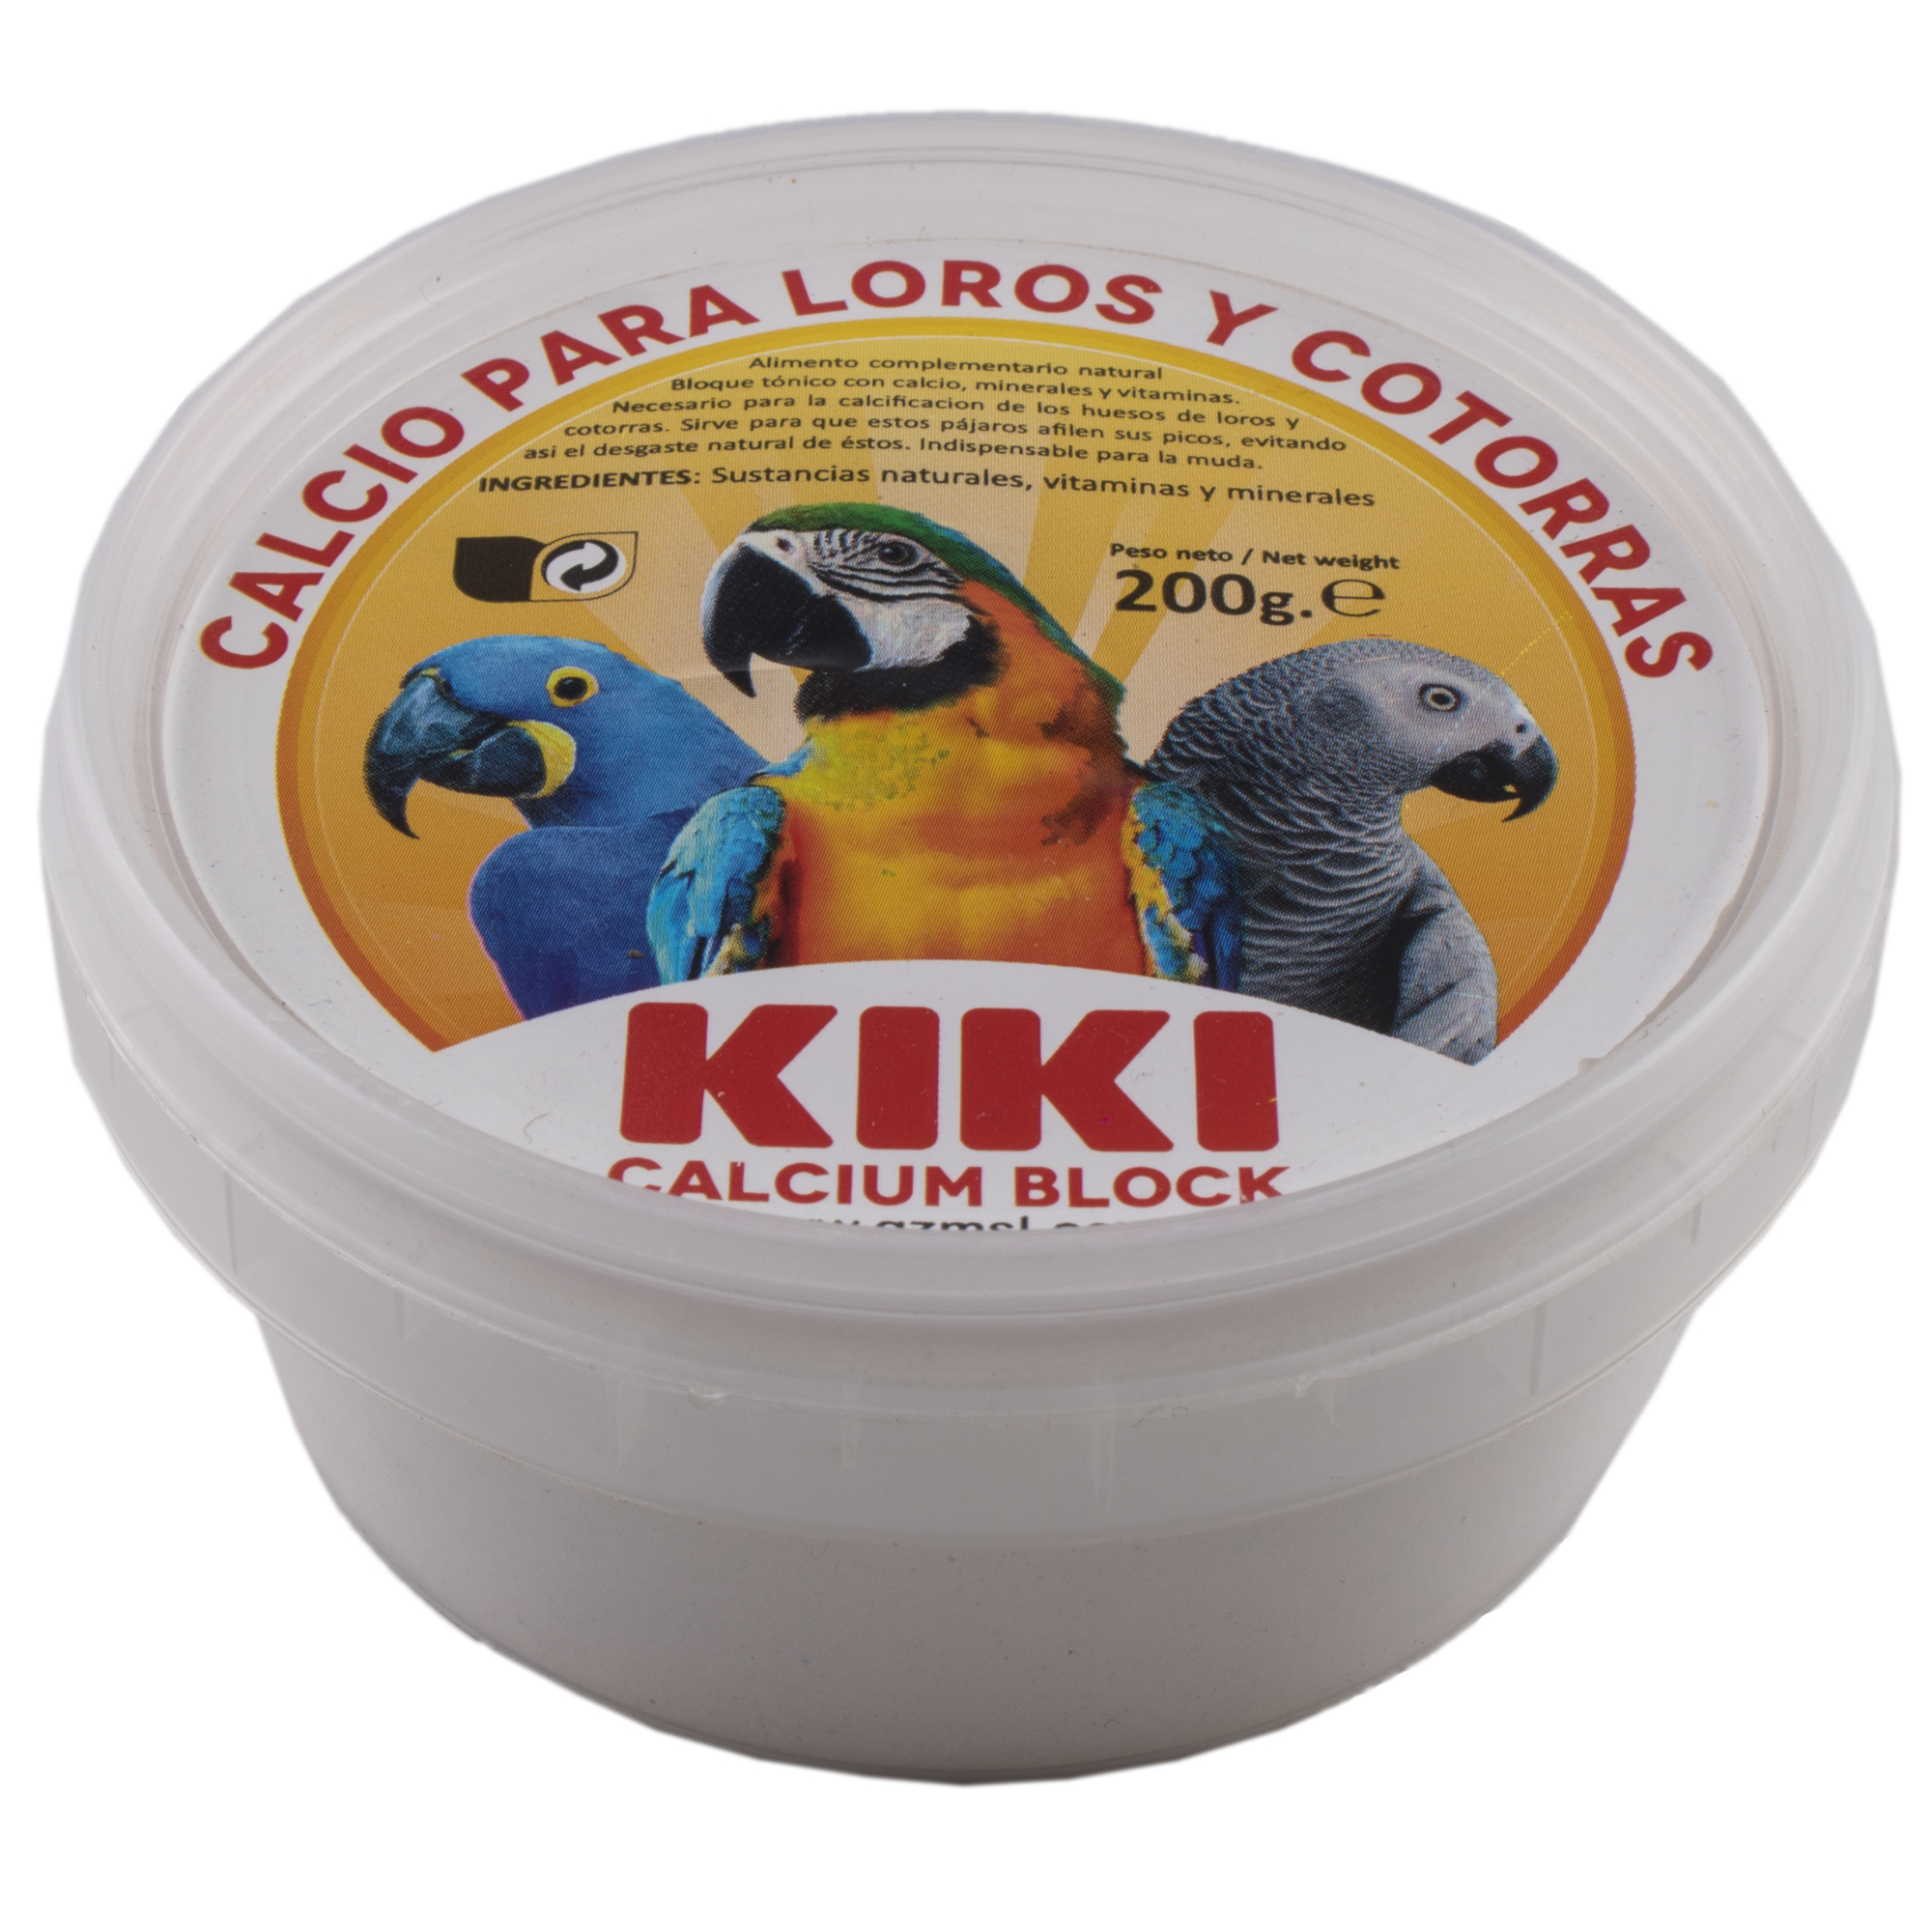 غذای کاسکو کیکی مدل CALCIUM BLOCK وزن 200 گرم 